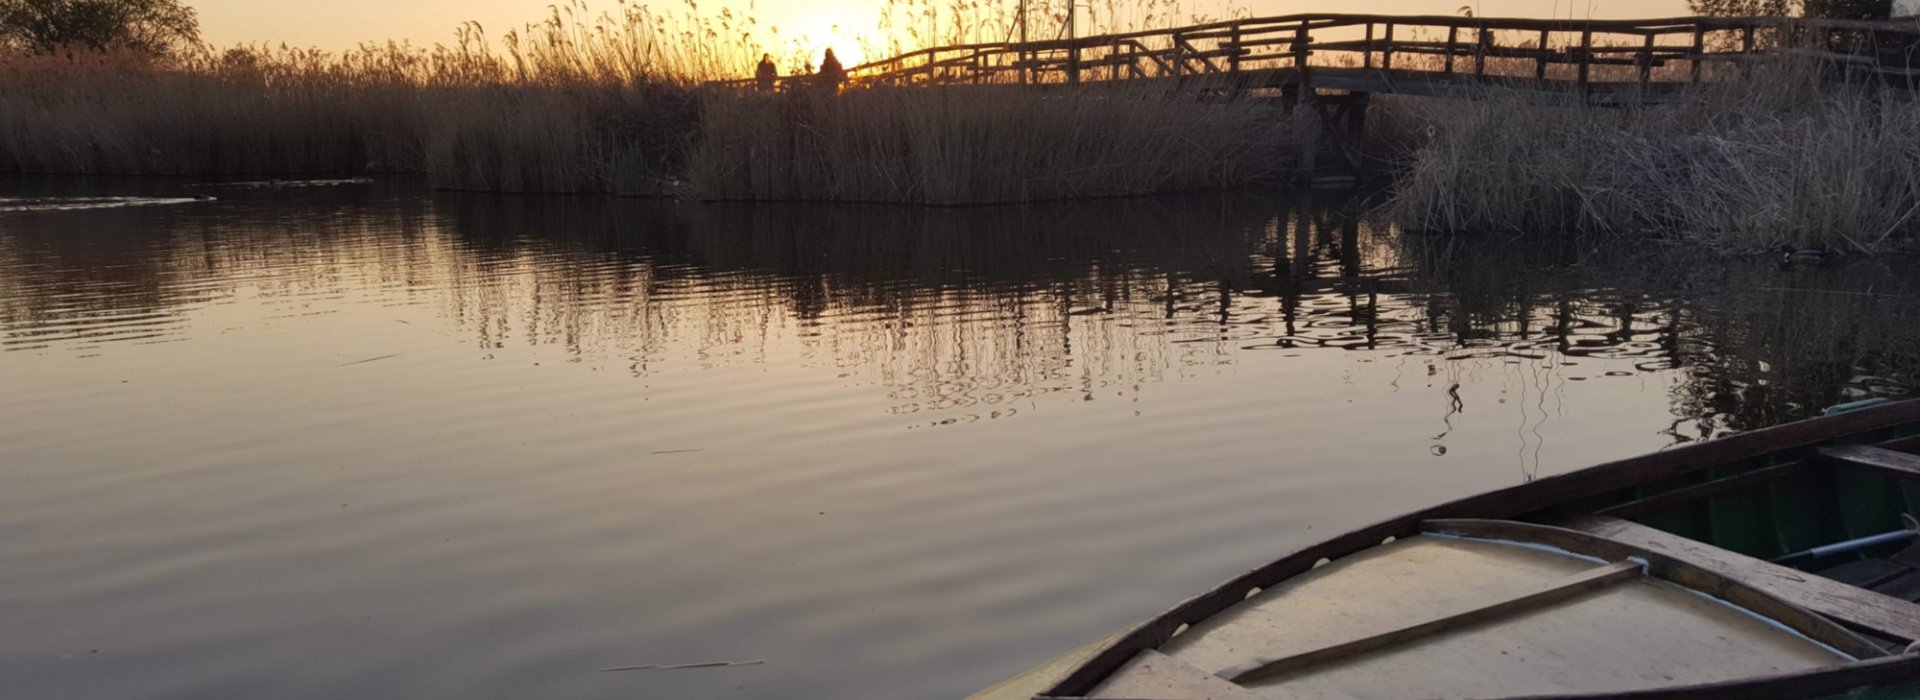 tipica barca in legno nel lago di massaciuccoli durante il tramonto